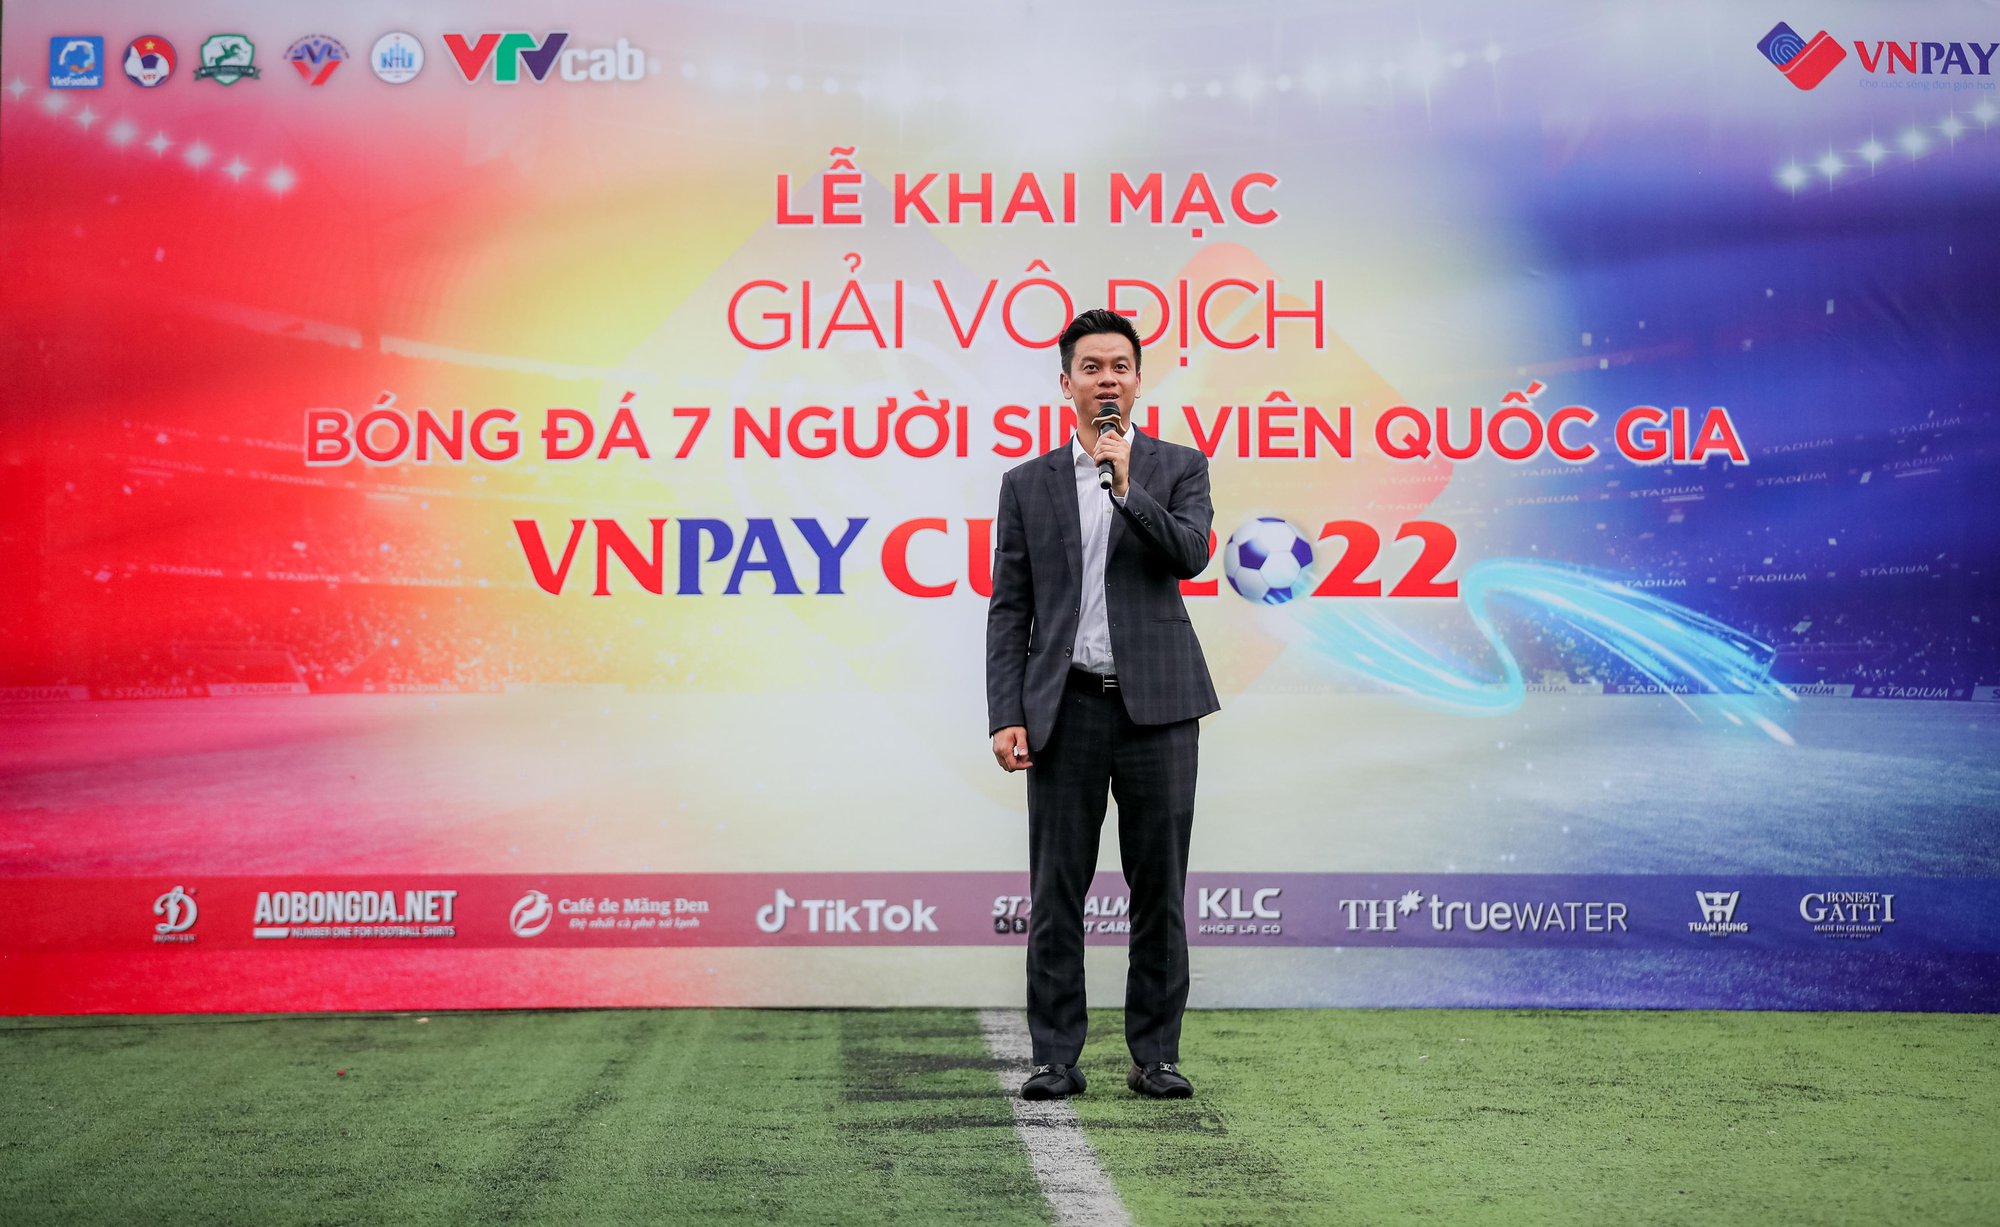 Khai mạc giải bóng đá người sinh viên quốc gia VNPAY Cup 2022 - Ảnh 1.